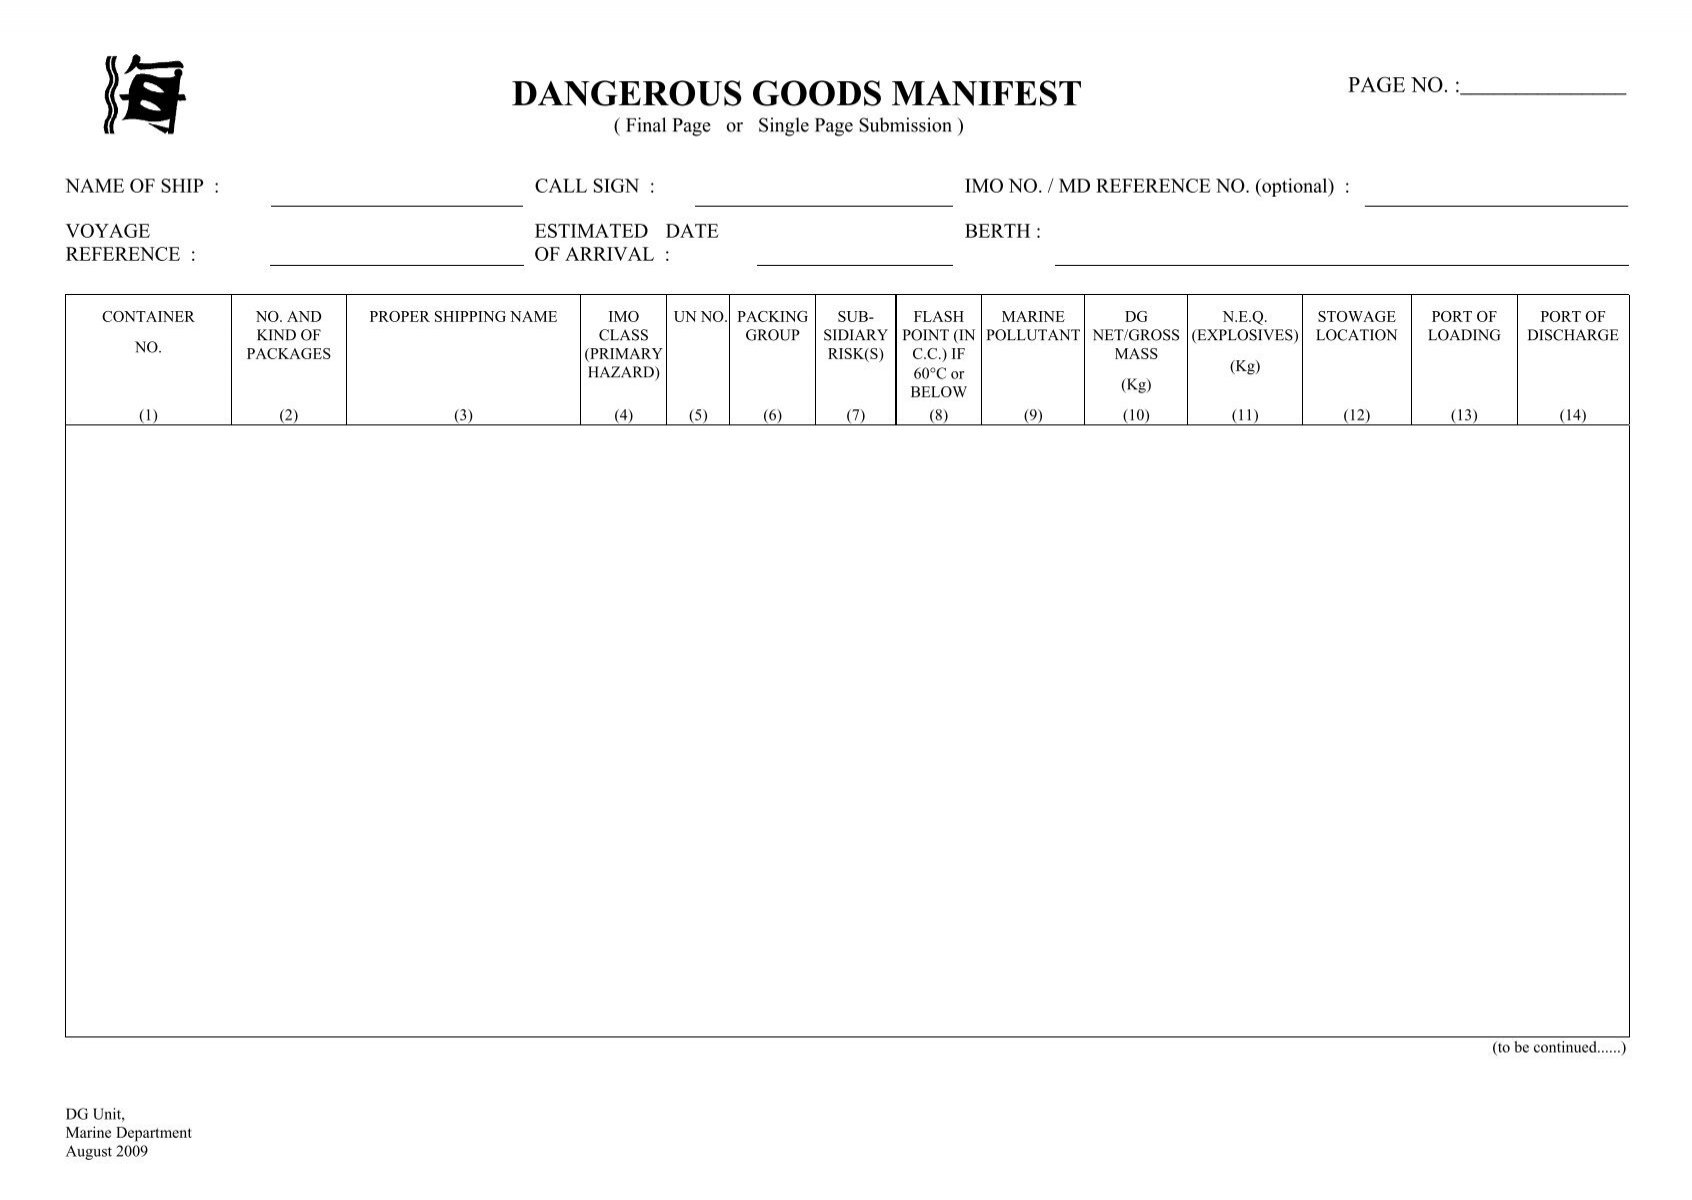 Dangerous Goods Manifest Final Page